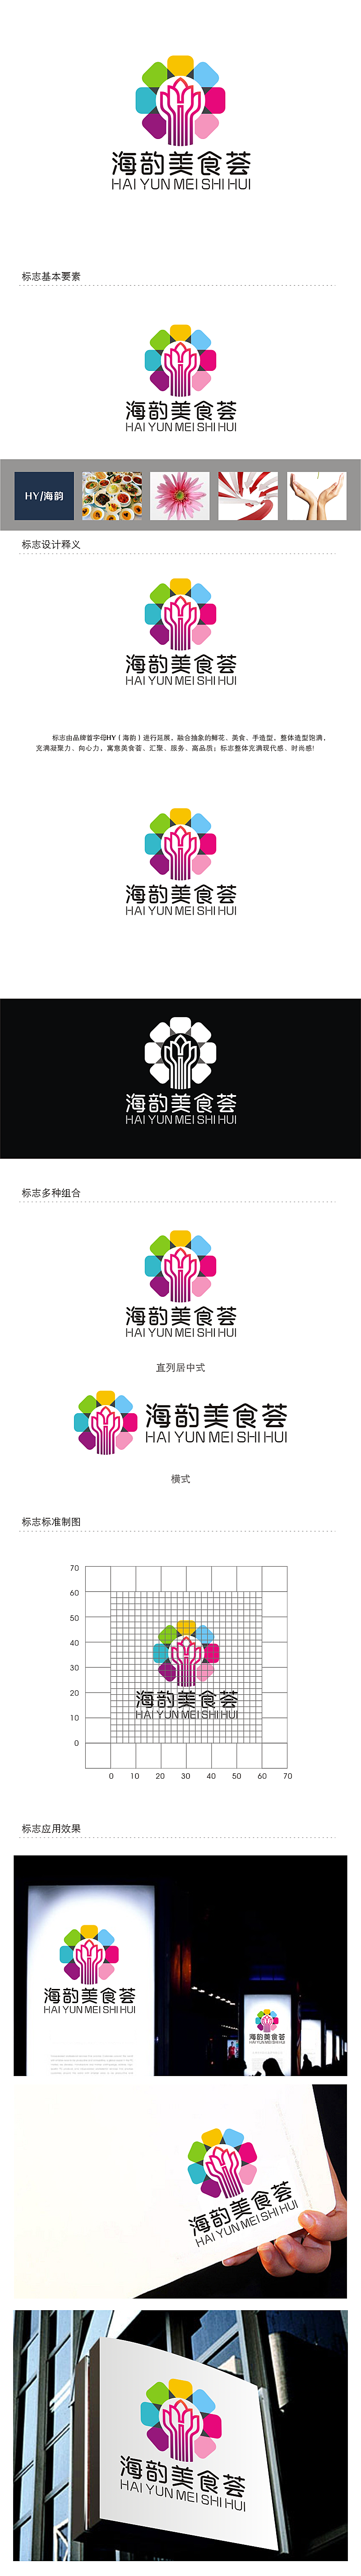 劳志飞的海韵美食荟logo设计